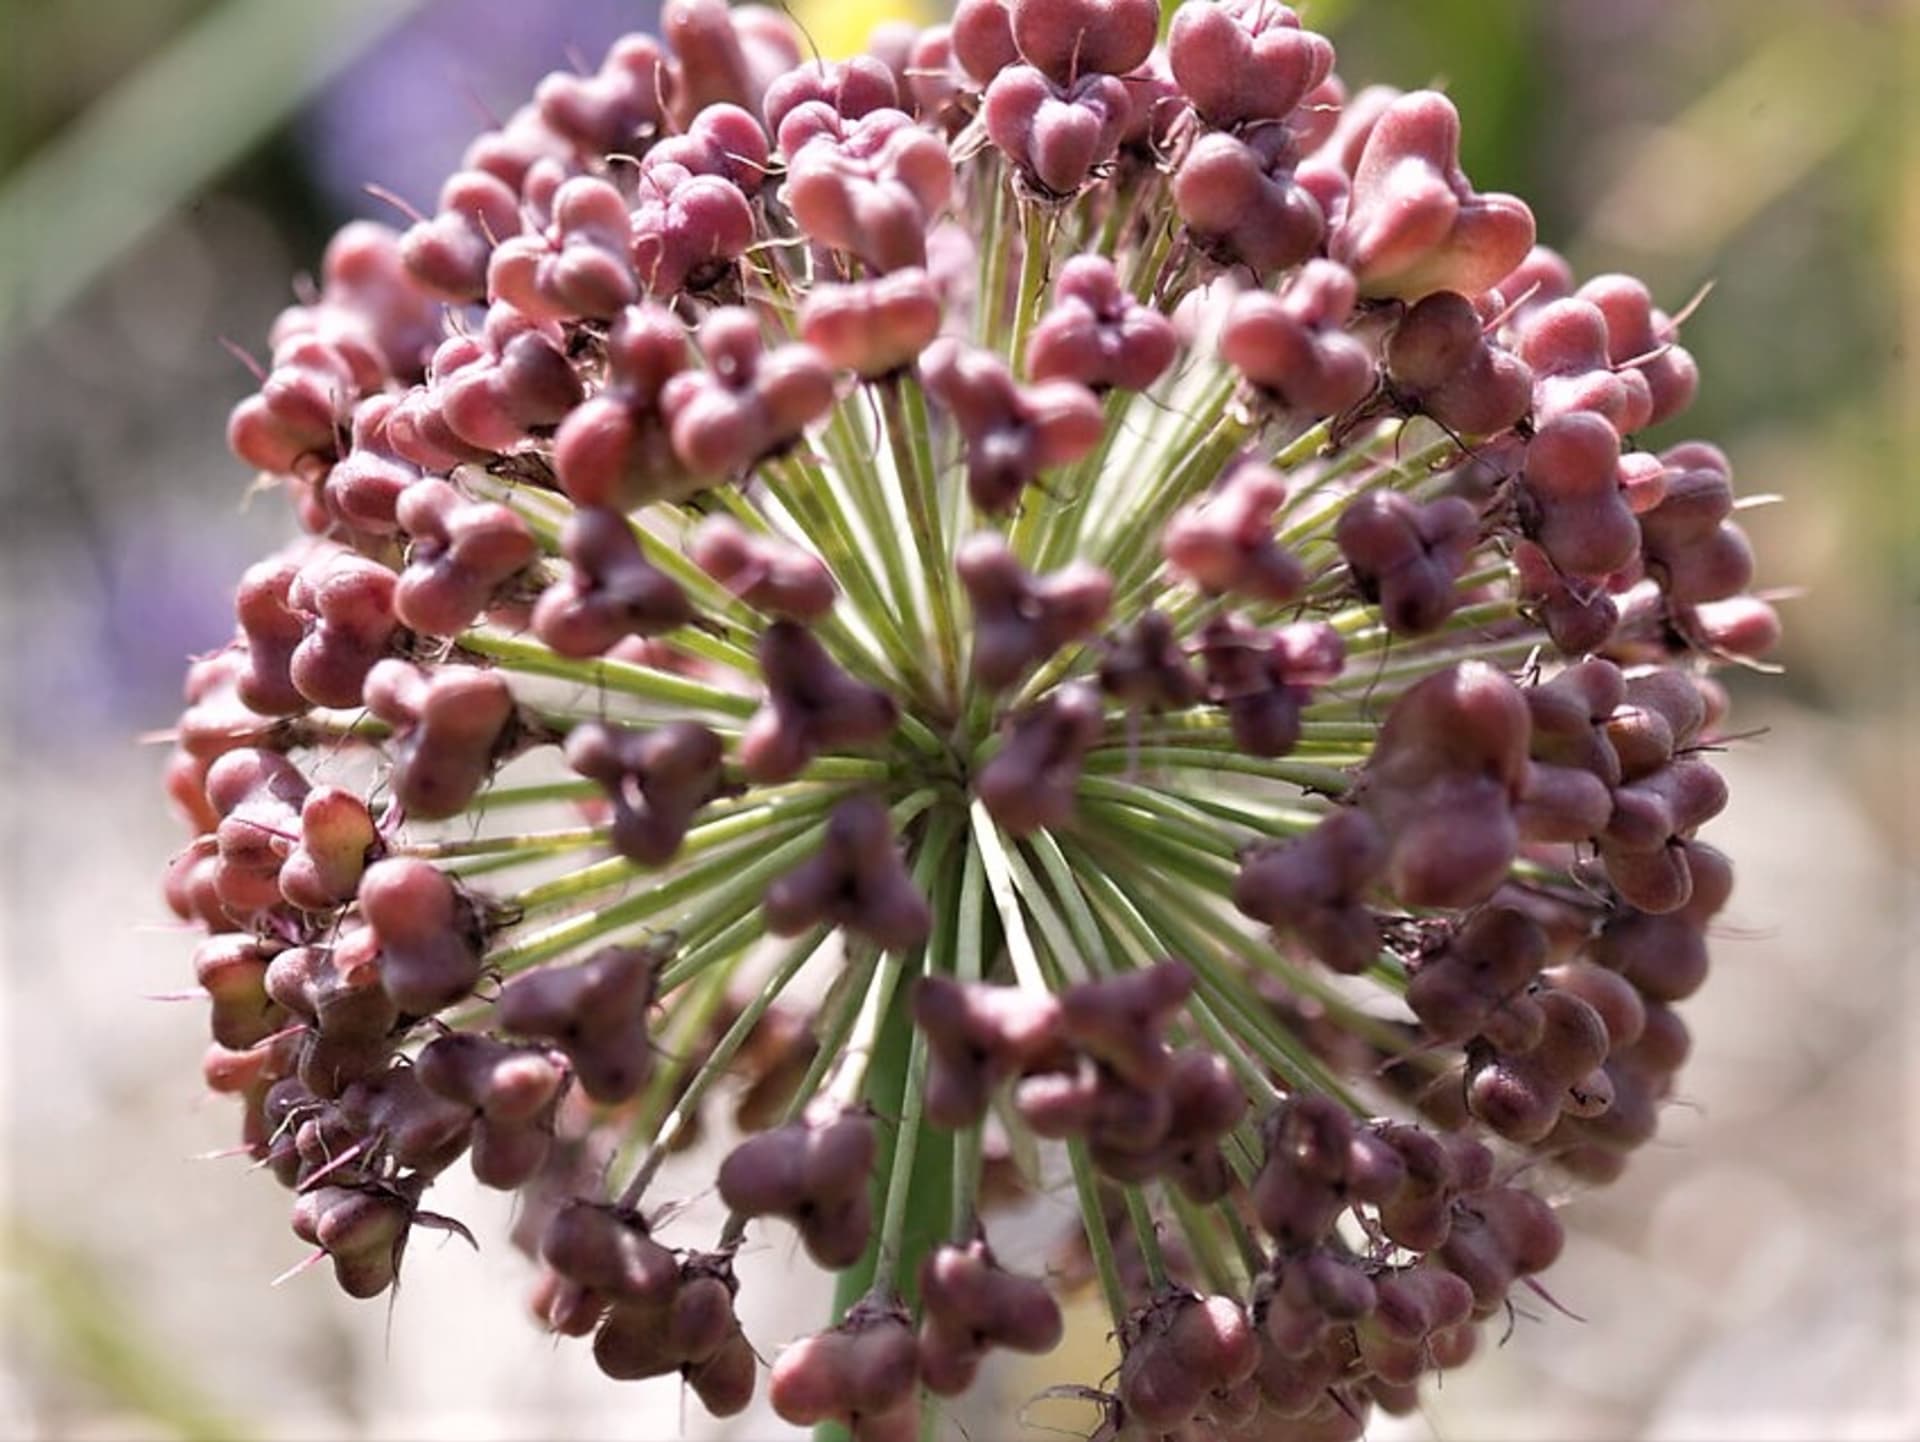 Česnek karatavský (Allium karataviense) patří mezi nejnižší druhy. Koule hustých kvítků o průměru 5–10 cm jsou bílé, krémové nebo světle fialové.